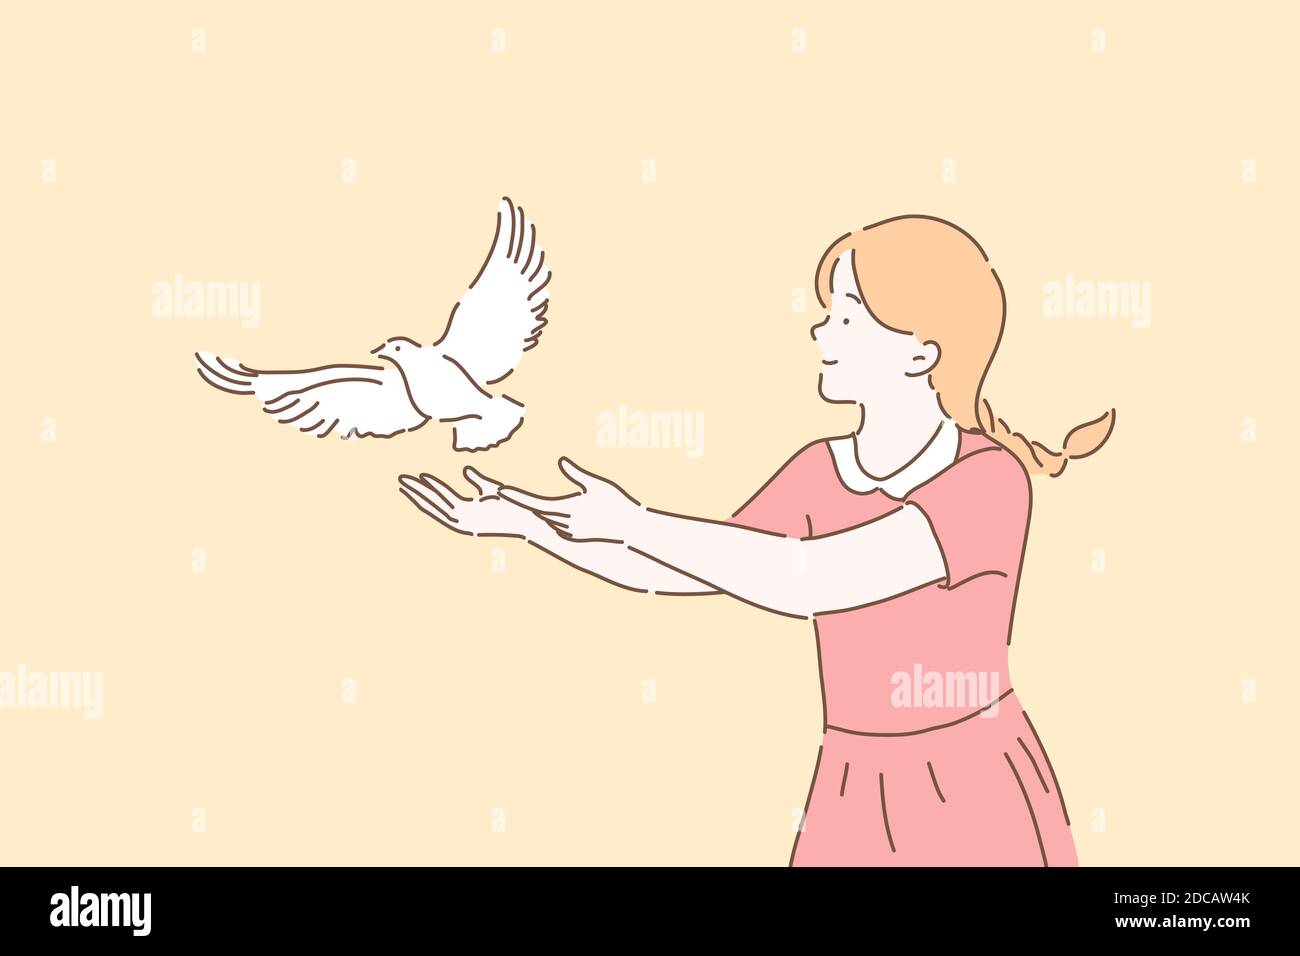 Friedenssymbol, Freiheit Metapher Konzept. Mädchen gehen lassen weiße Taube, nettes Kind Einstellung frei Taube mit offenen Armen Geste, weibliche Freiwillige kümmert sich Stock Vektor